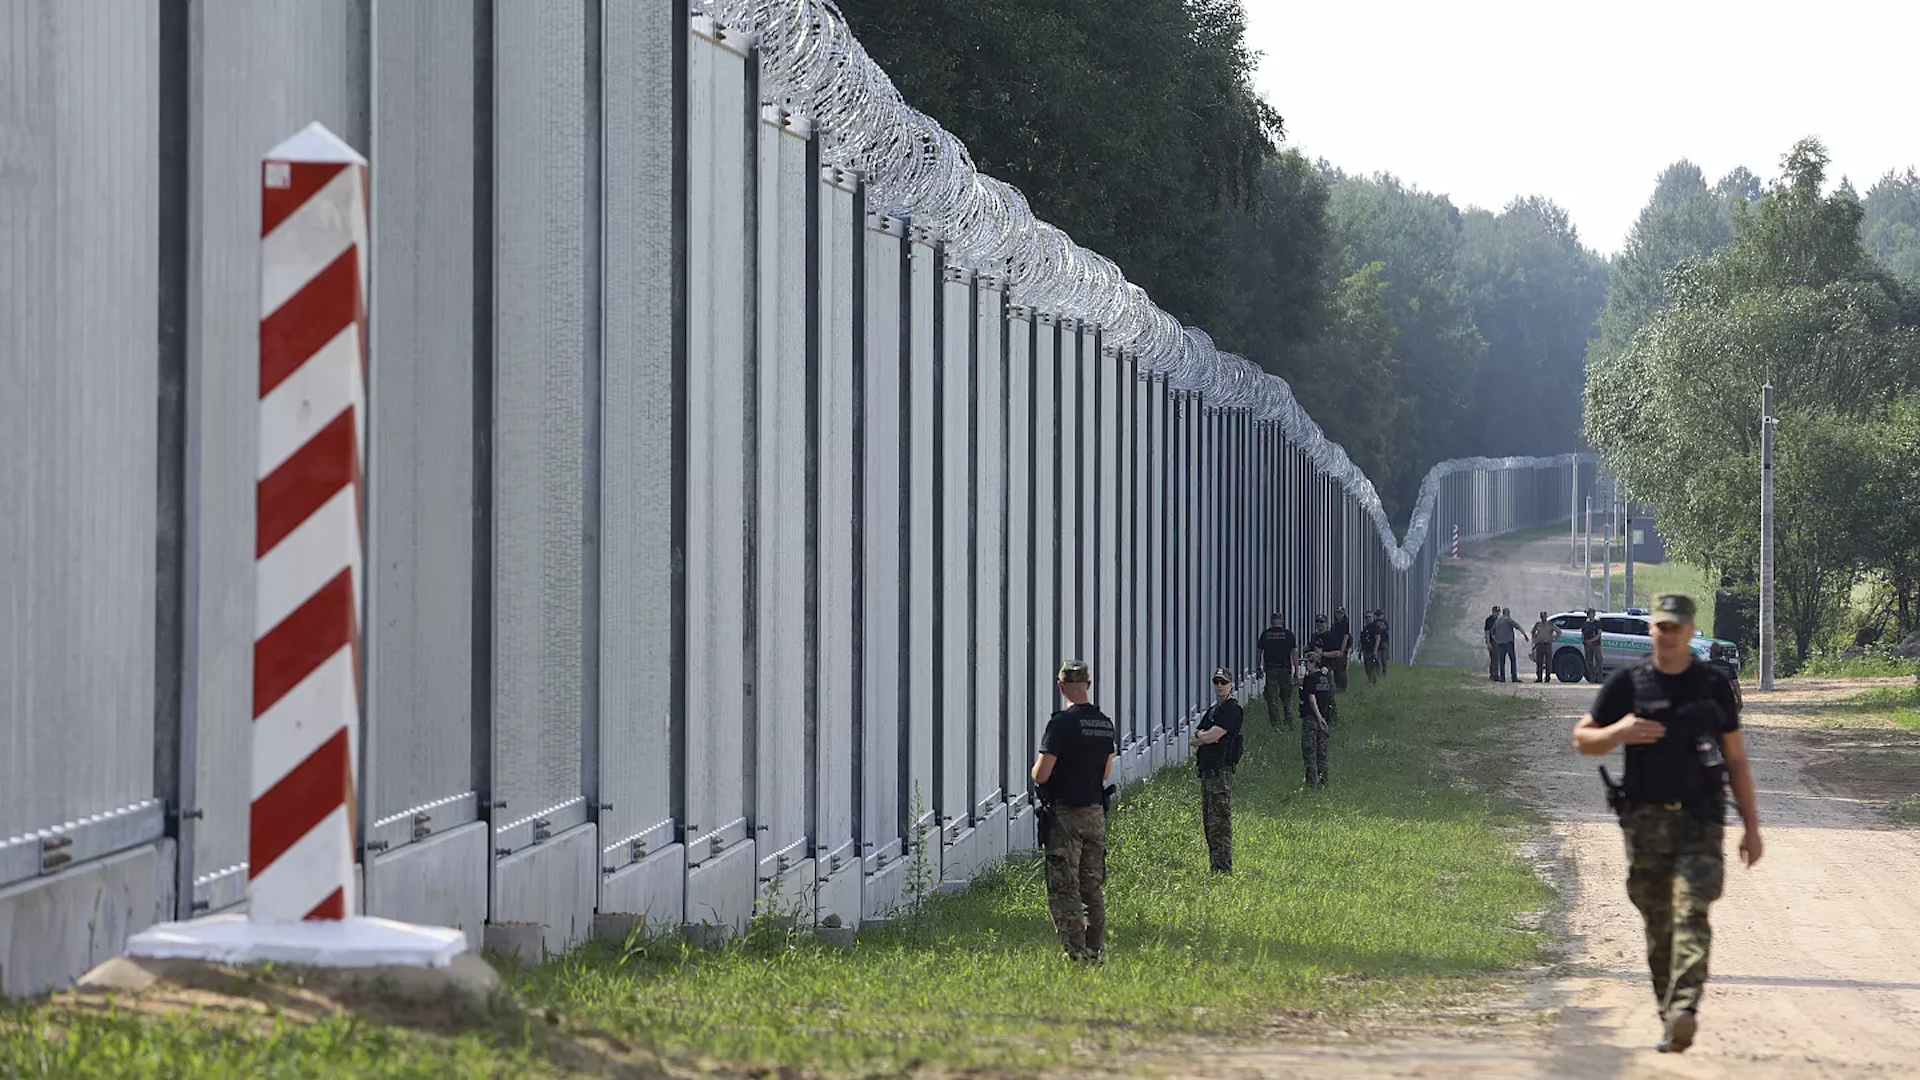 Ba Lan cử cảnh sát chống khủng bố tới biên giới Belarus - Ảnh 1.